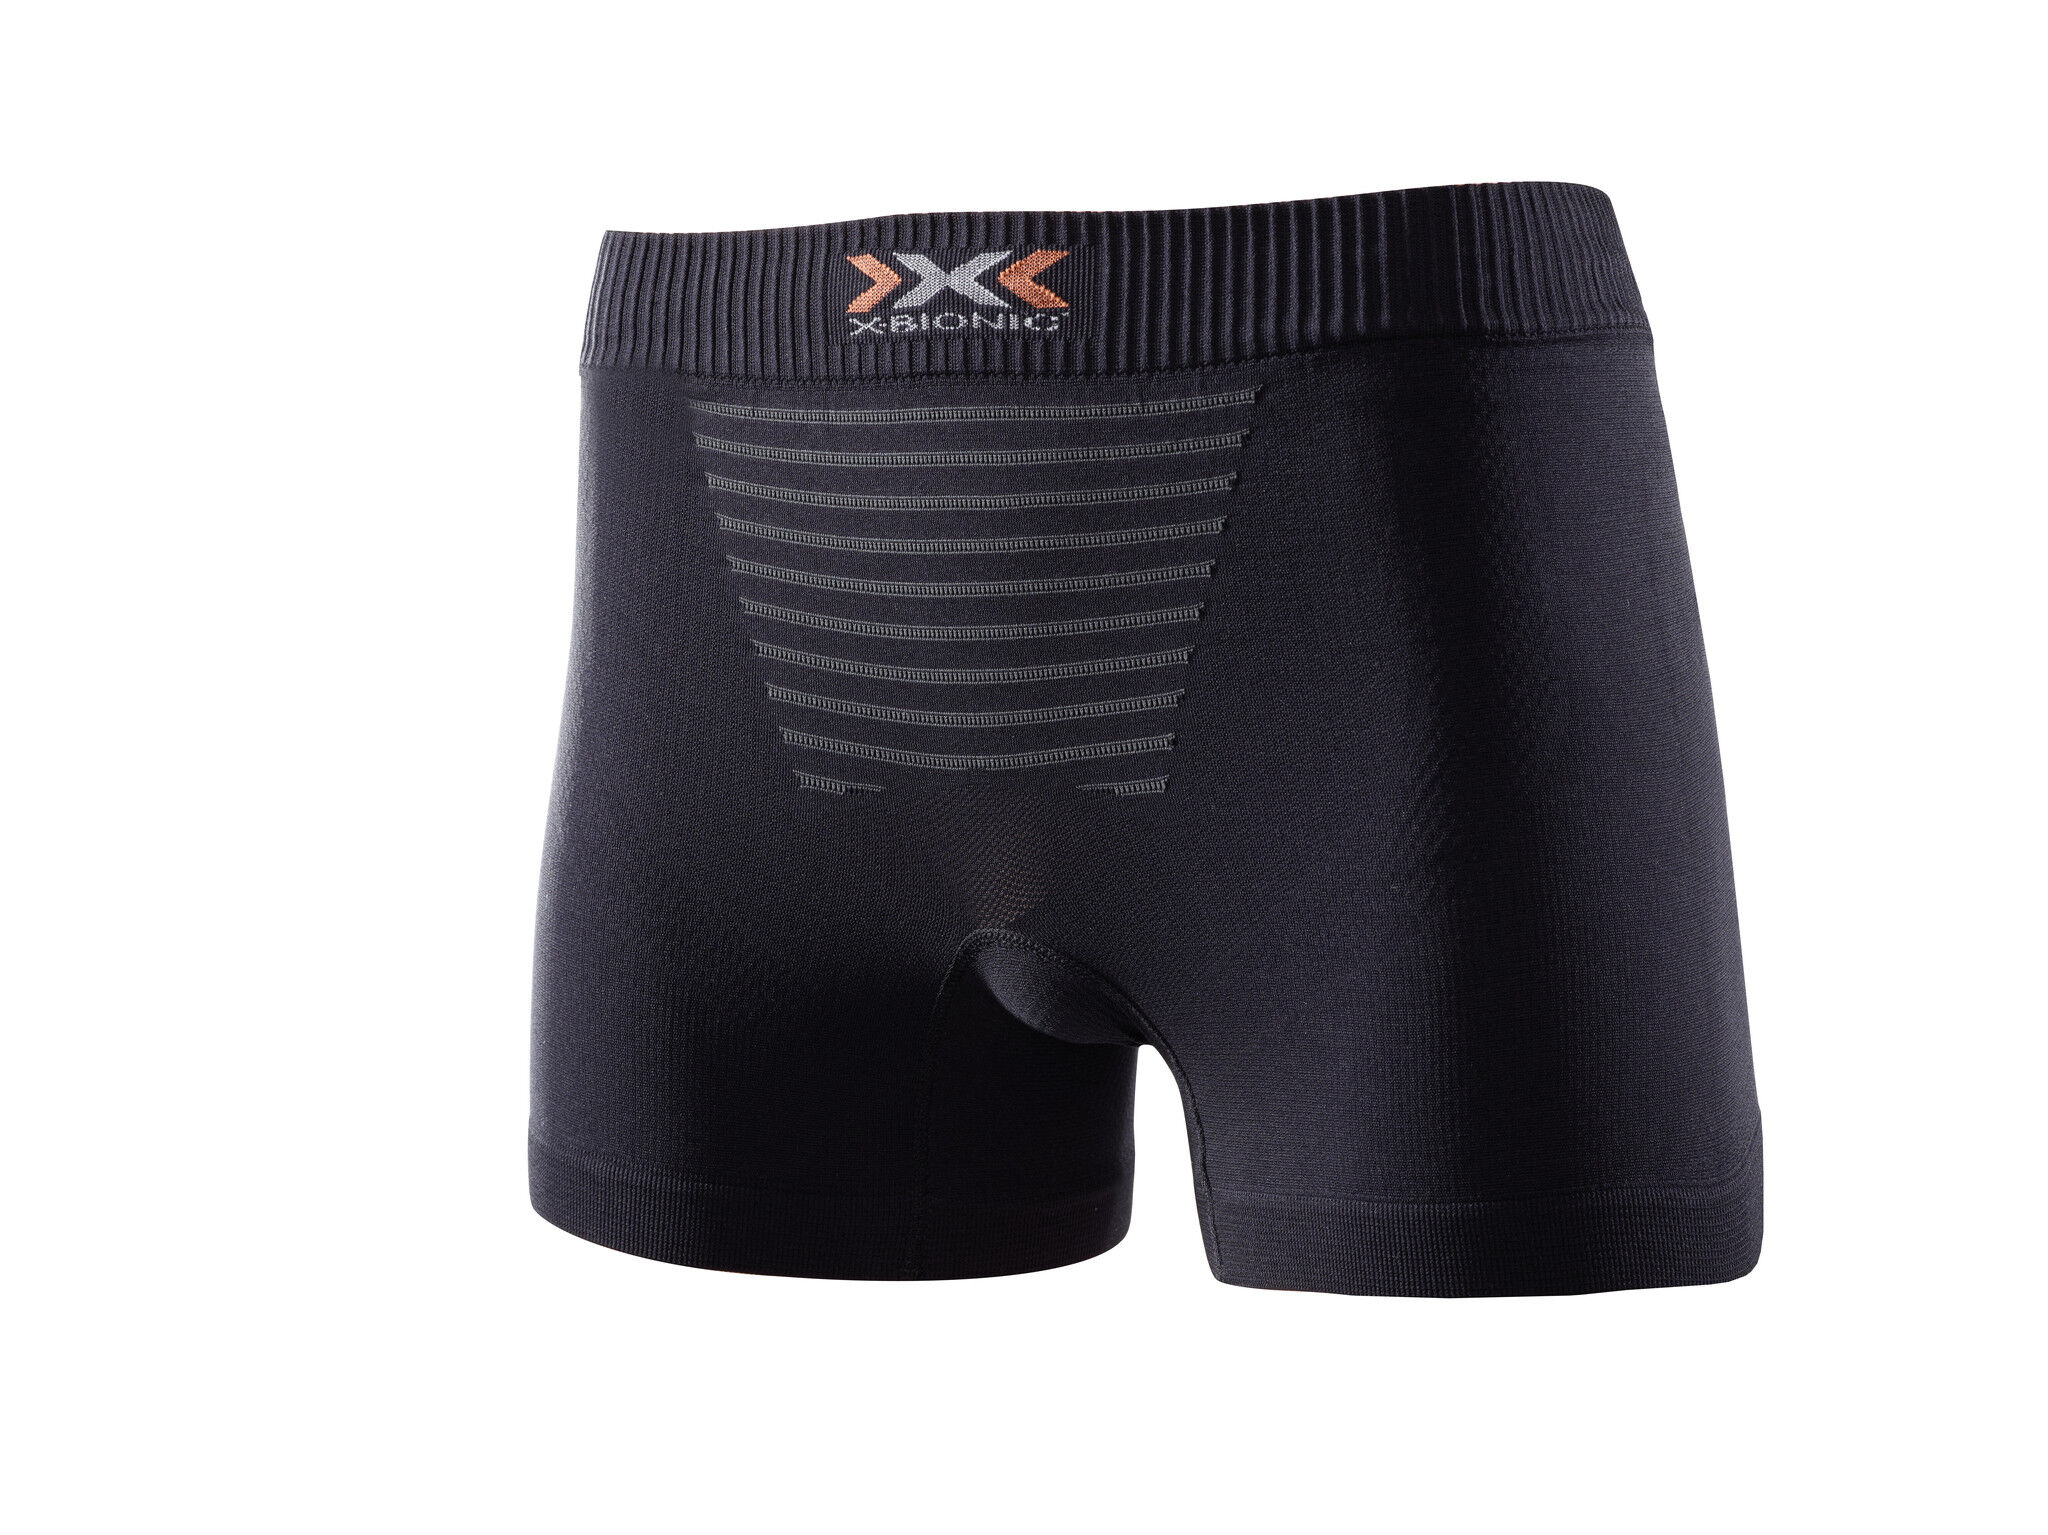 X-Bionic - Invent Summerlight - Underwear - Women's